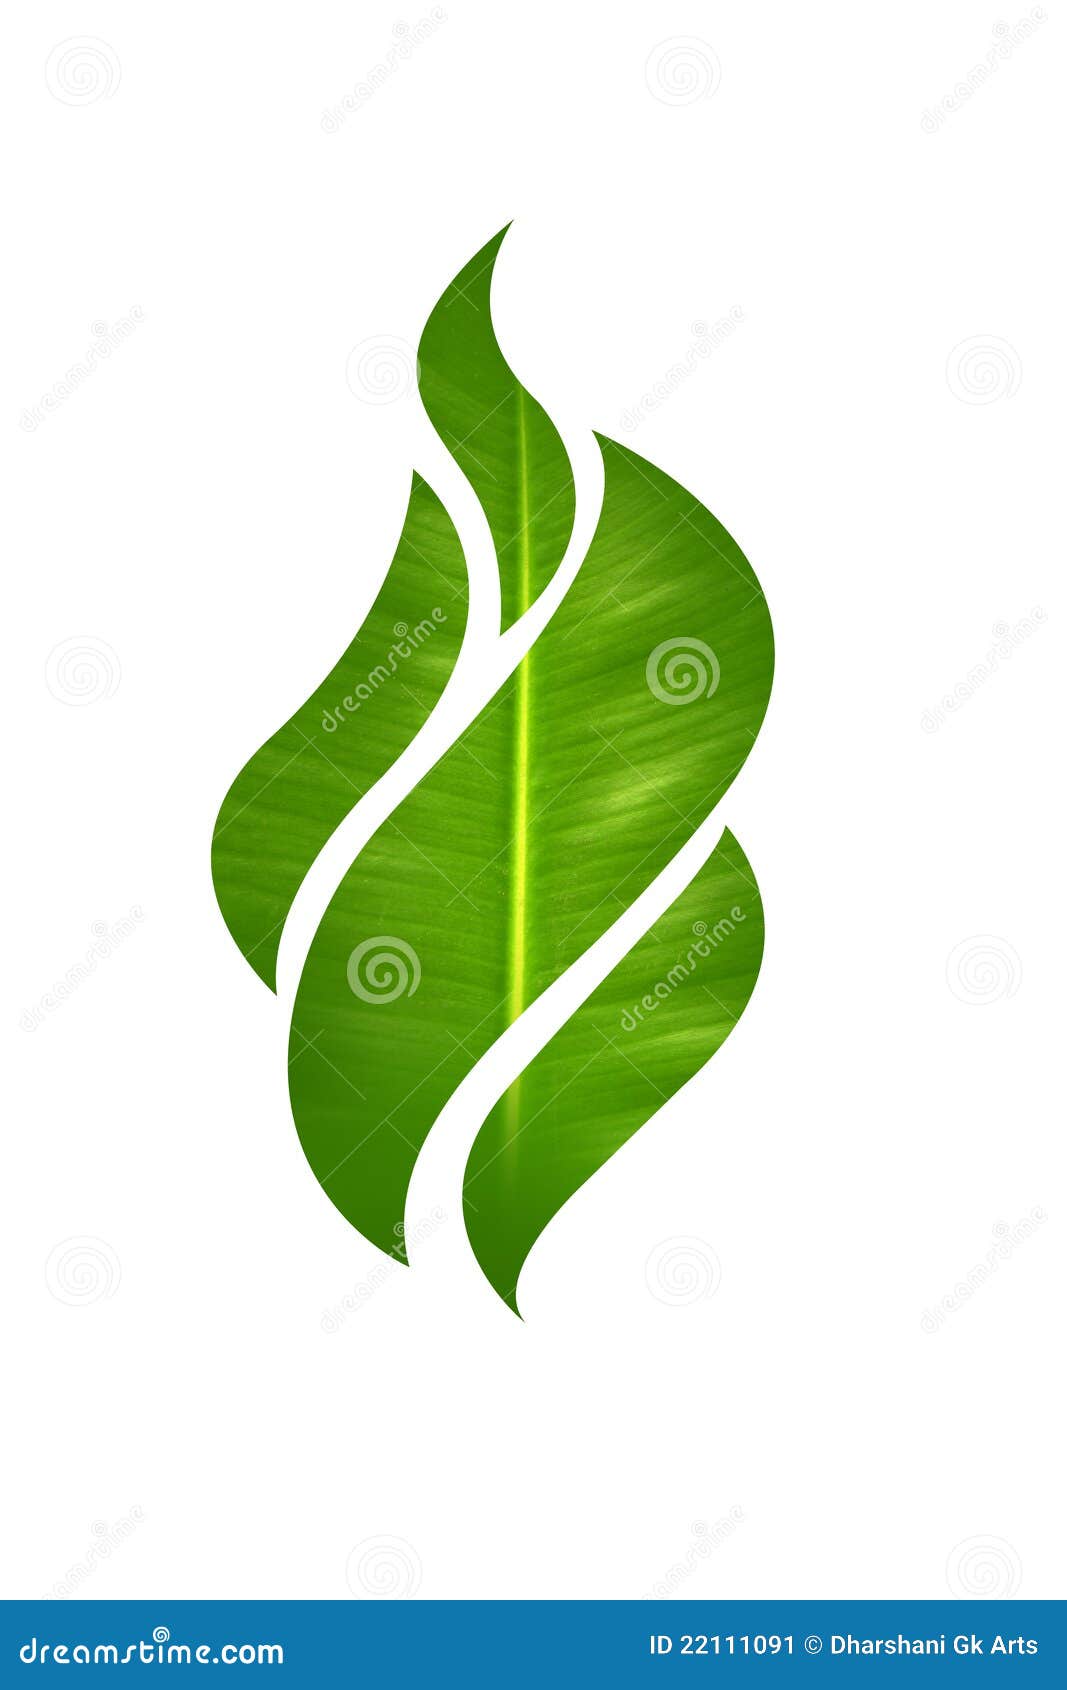 flame leaf 